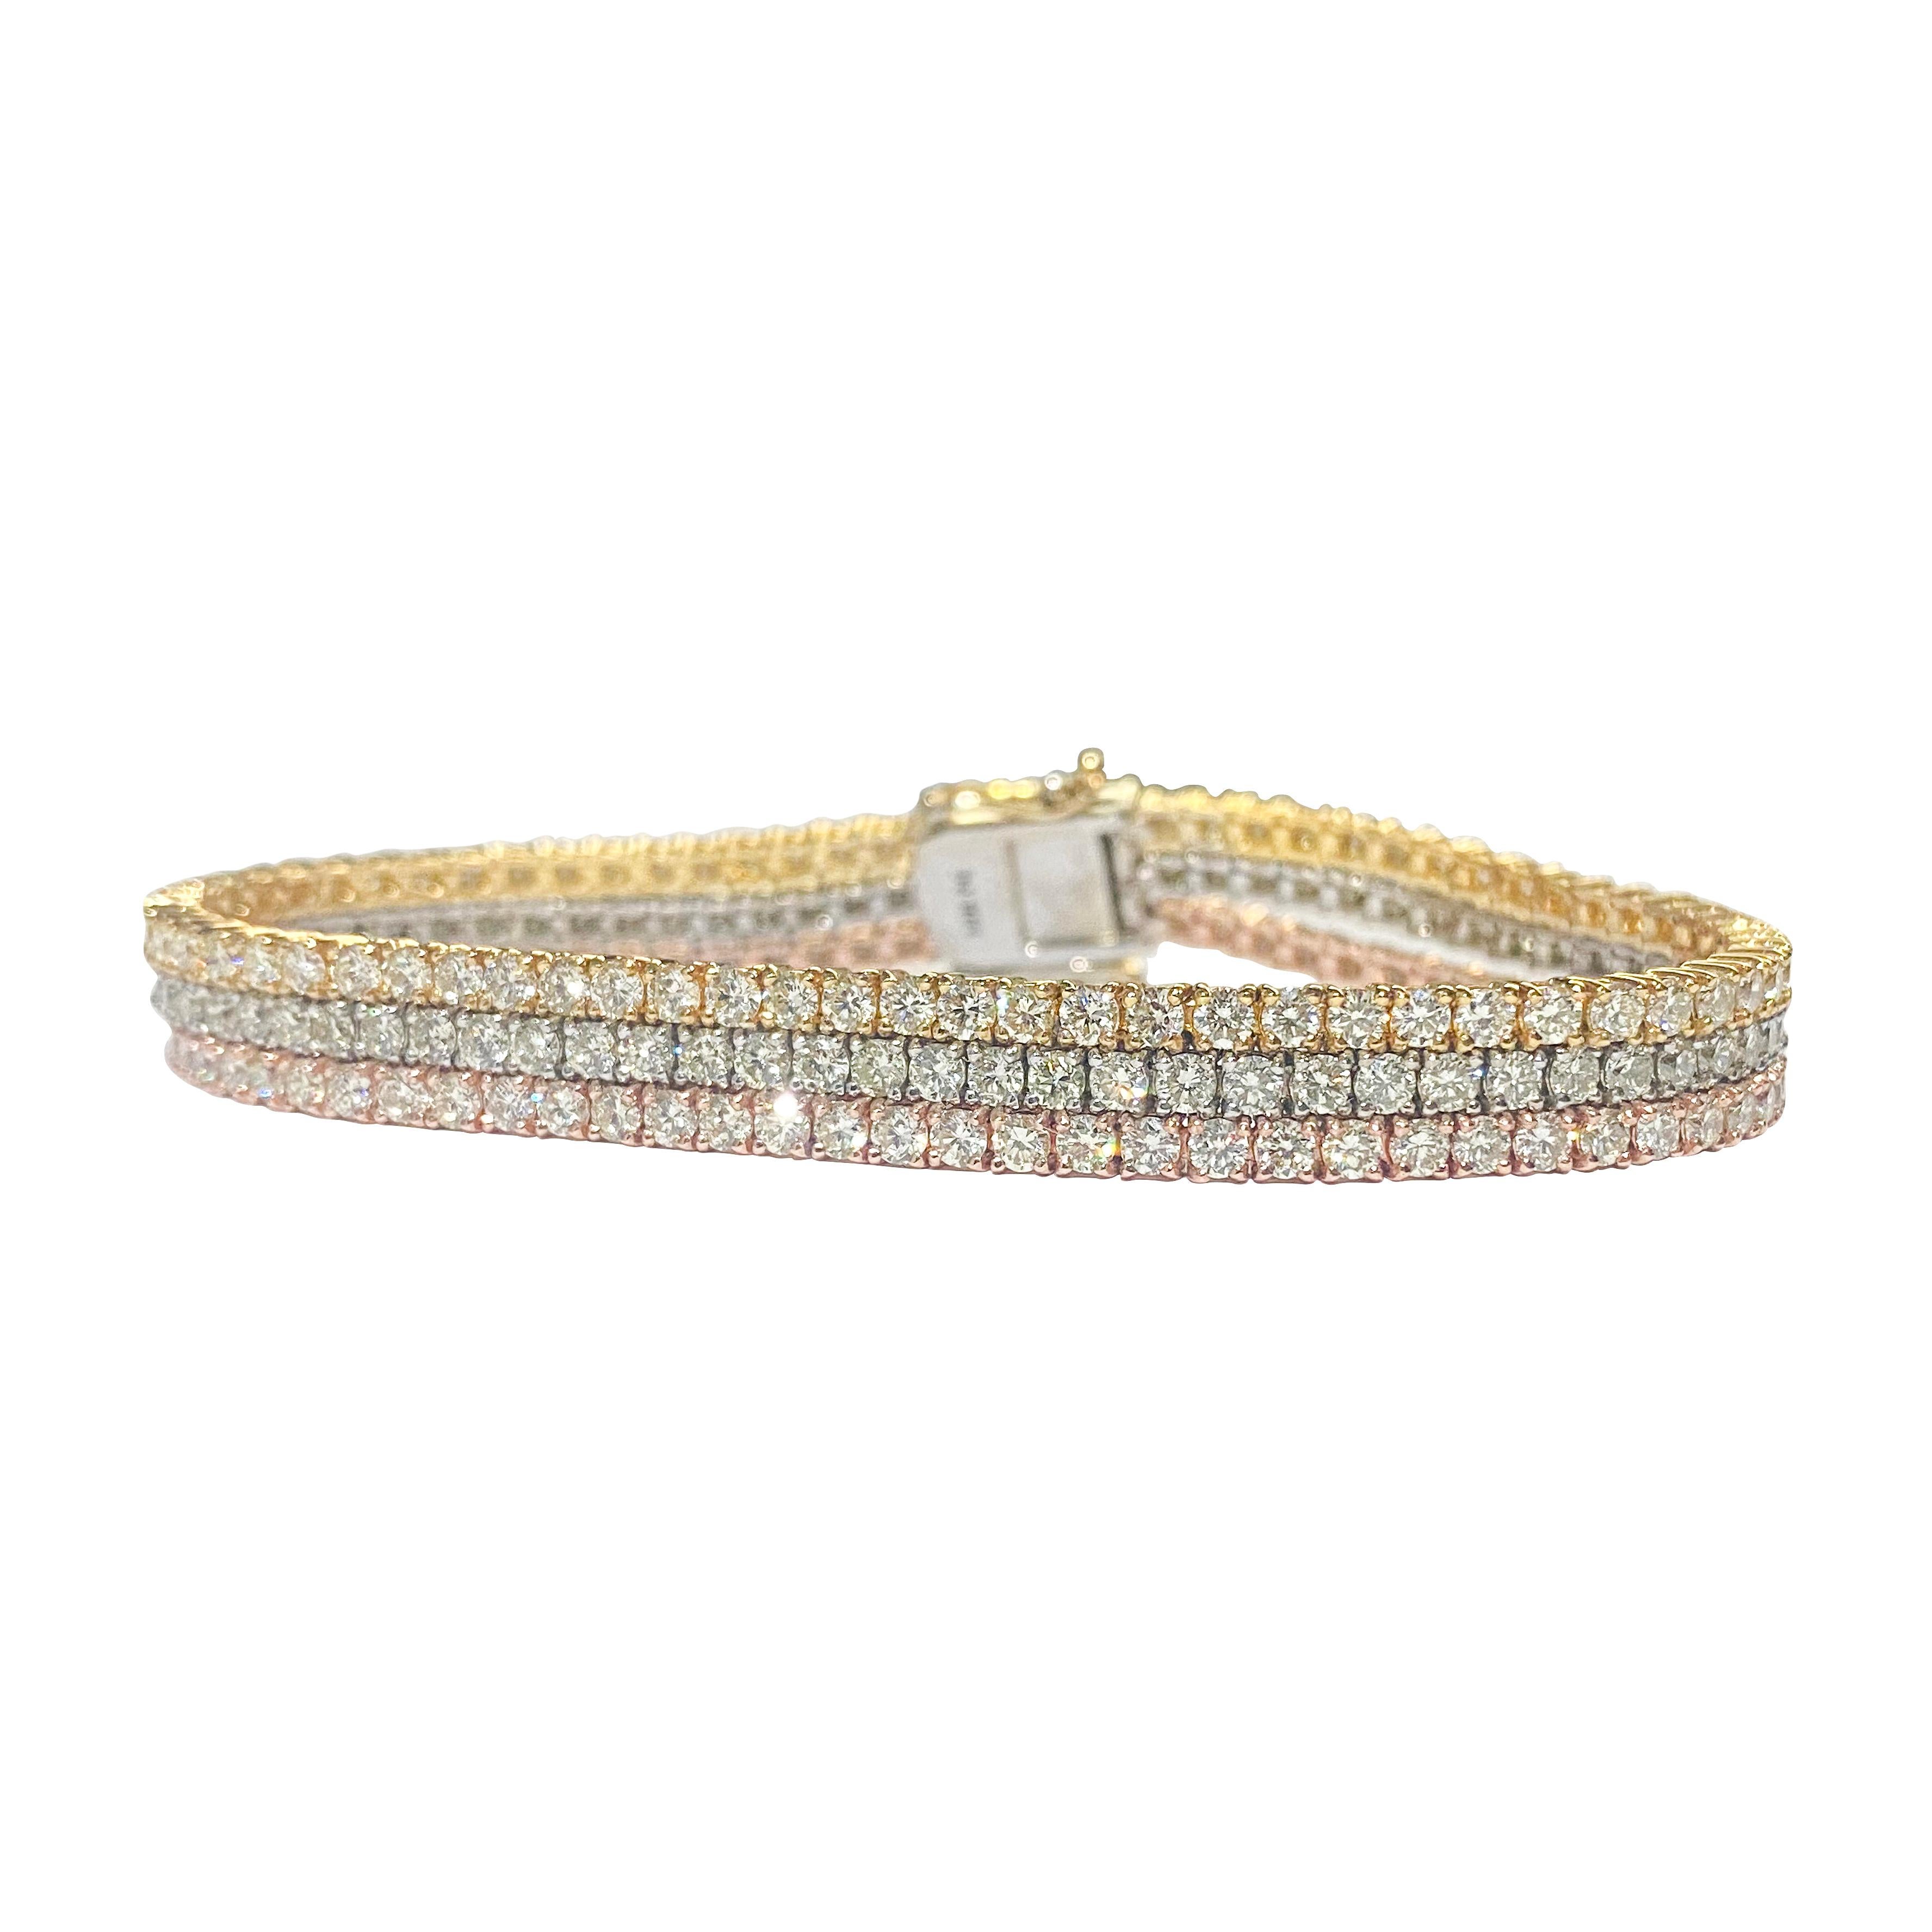 Whiting présente notre exquis bracelet tennis à diamants Trio Color, méticuleusement confectionné en or massif 10k dans des teintes jaune, rose et blanche. Orné d'un éblouissant éventail de diamants ronds de taille brillant totalisant 10,50 carats,